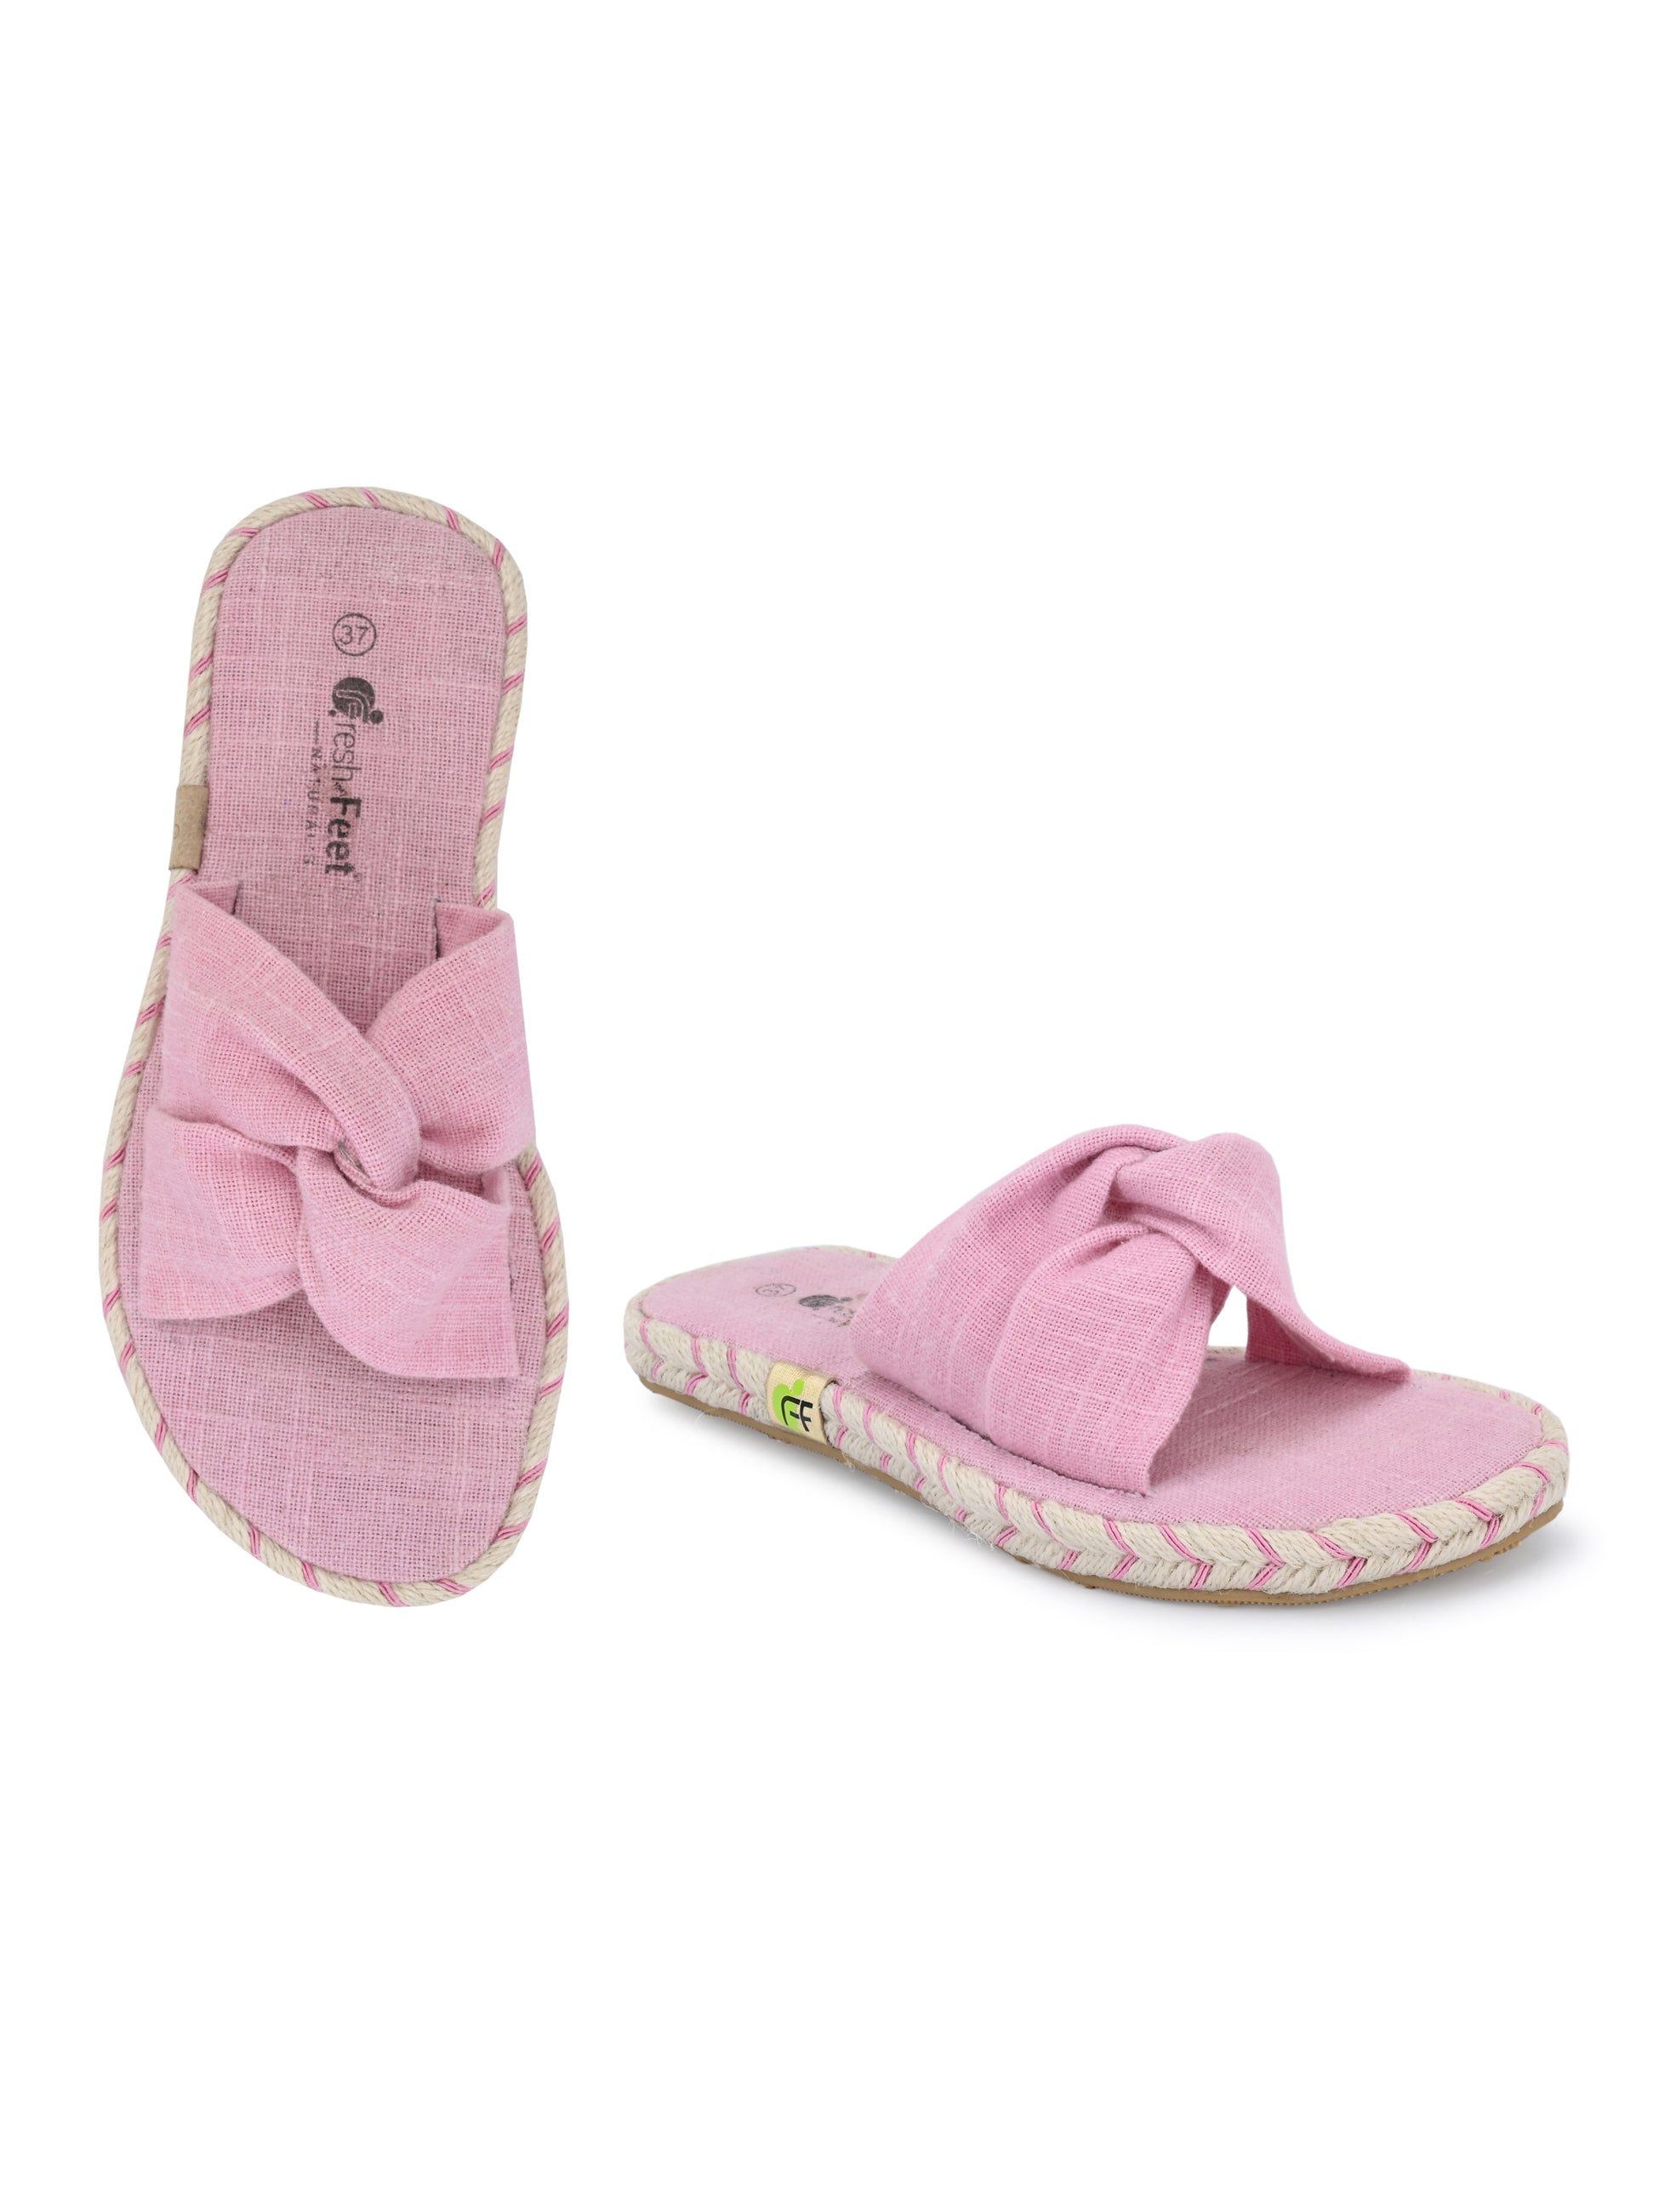 Footwear, Women Footwear, Pink Open Toe Flats